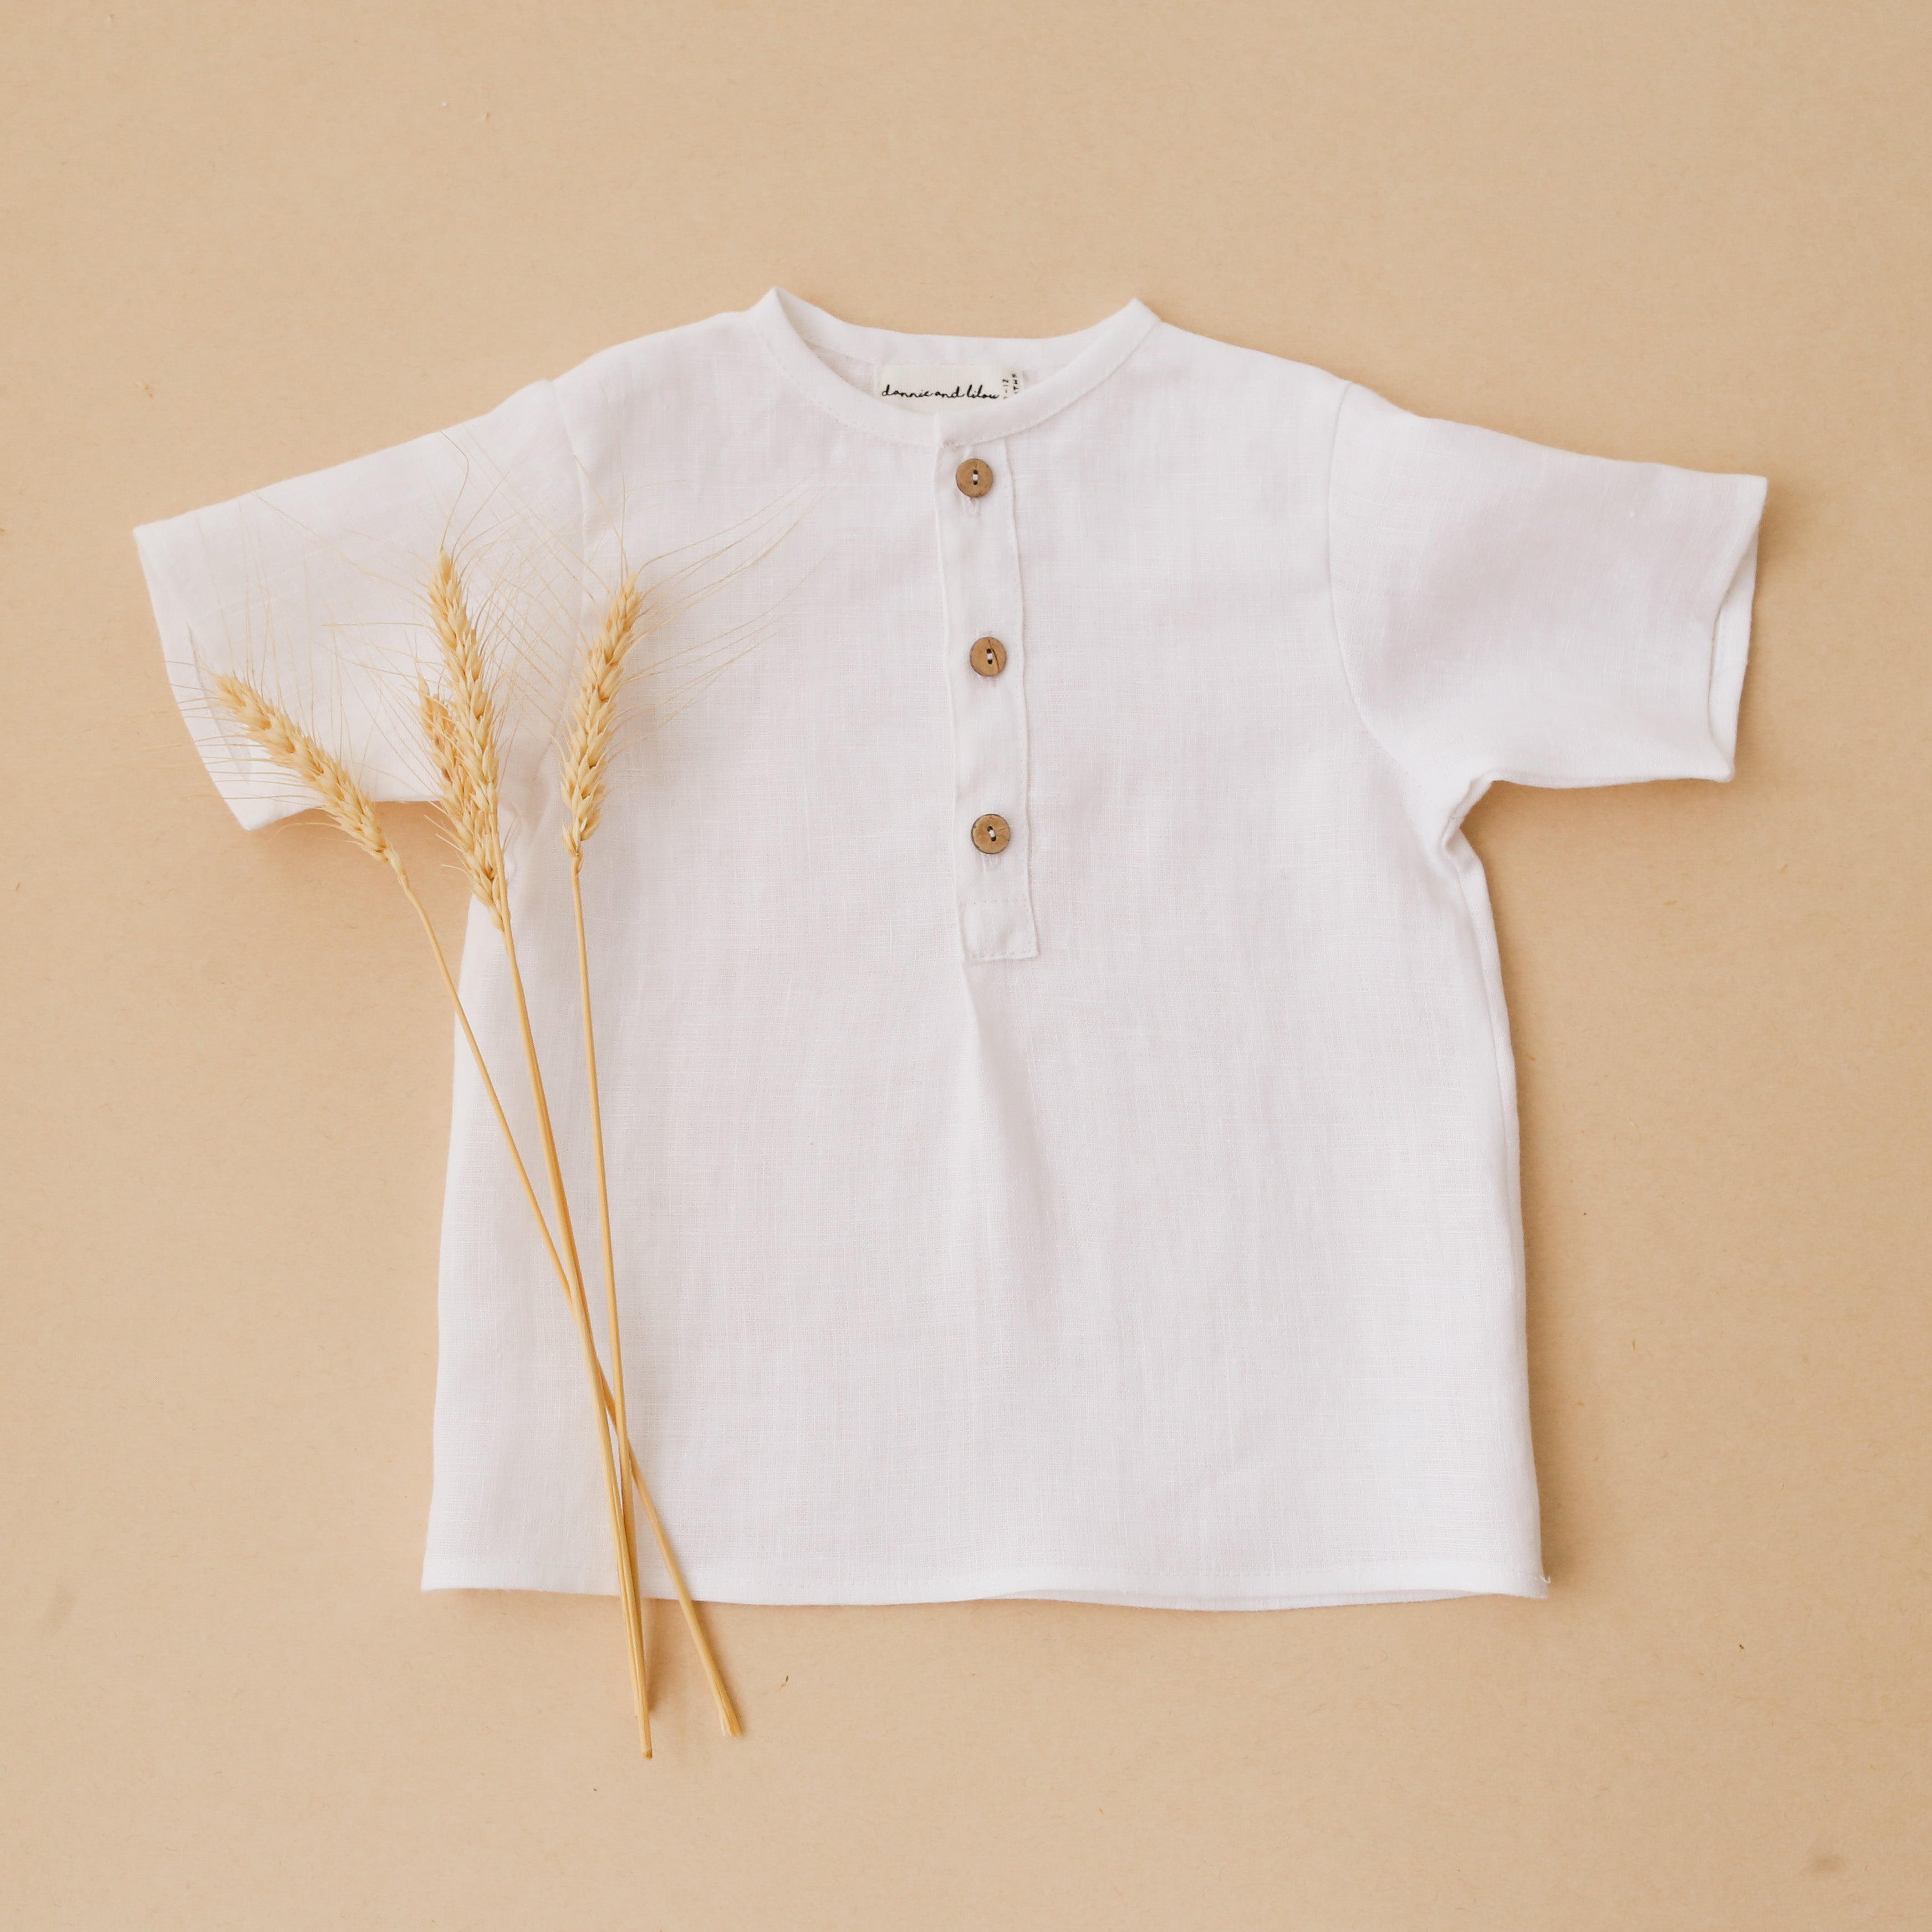 12-18 months - Milk Linen Short Sleeve Buttoned Tee